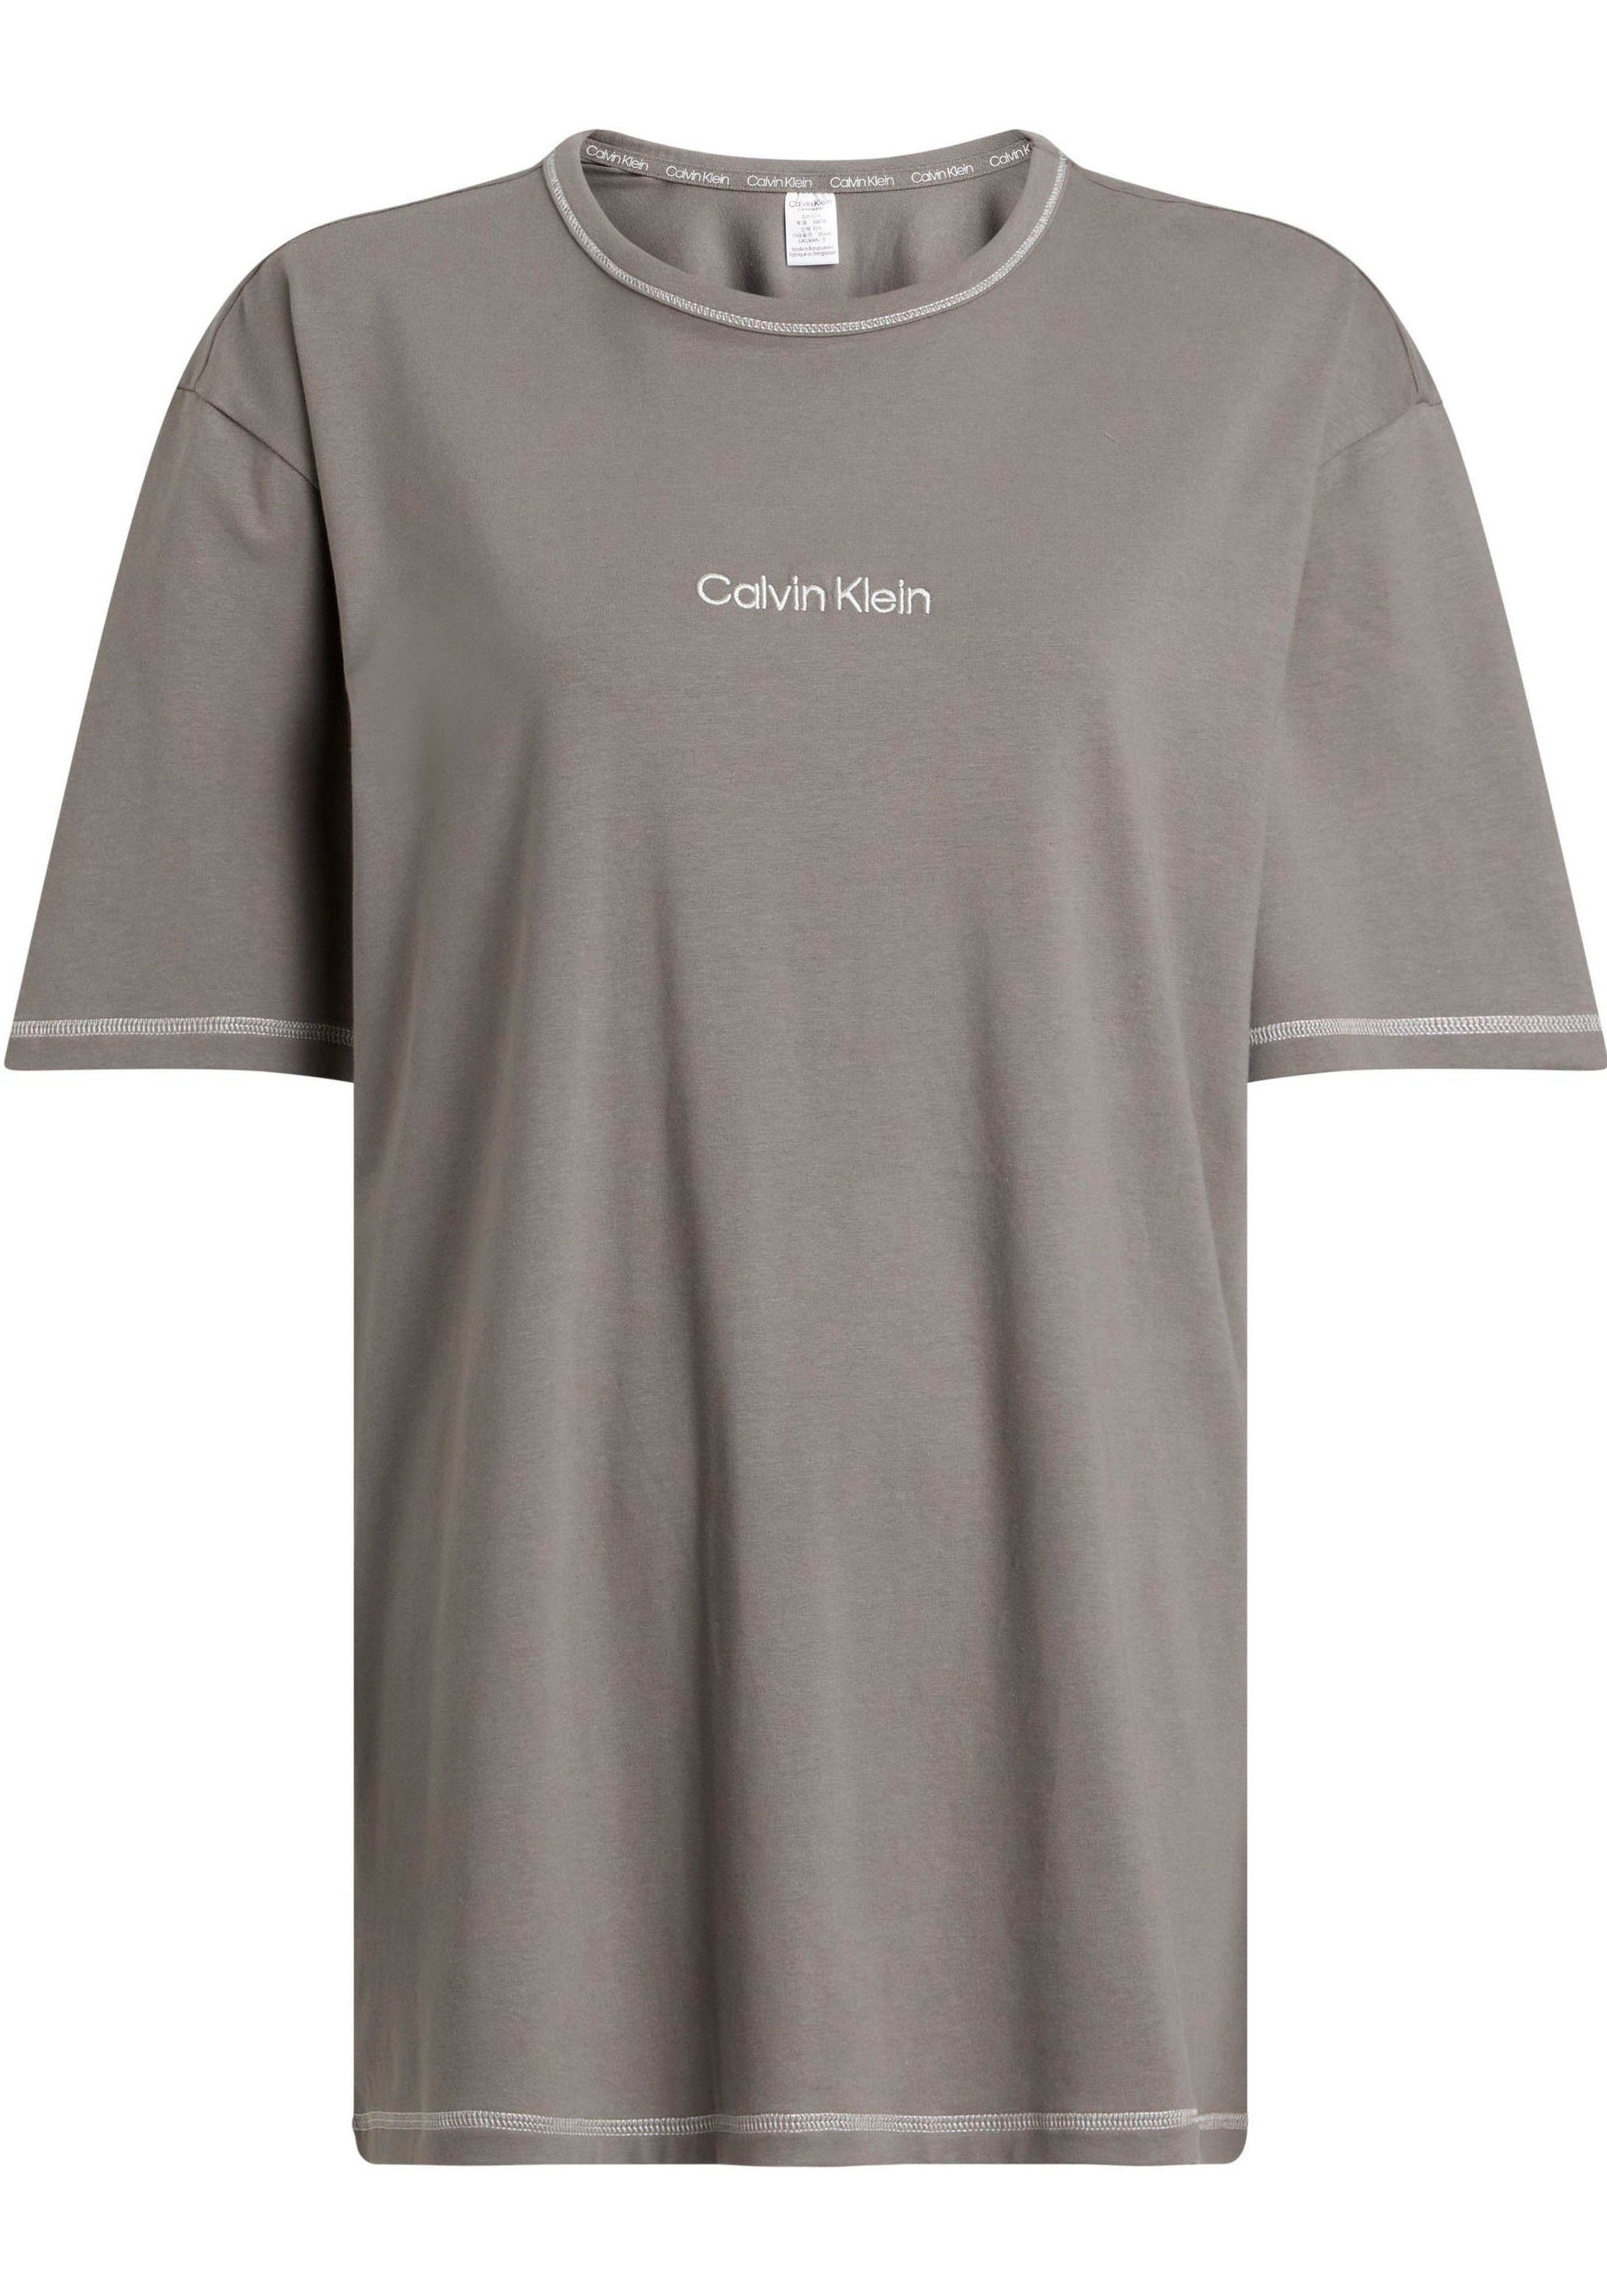 NECK Baumwollqualität S/S Rundhalsausschnitt, recyceltem mit mit Underwear Baumwollanteil T-Shirt CREW Klein Elastische Calvin